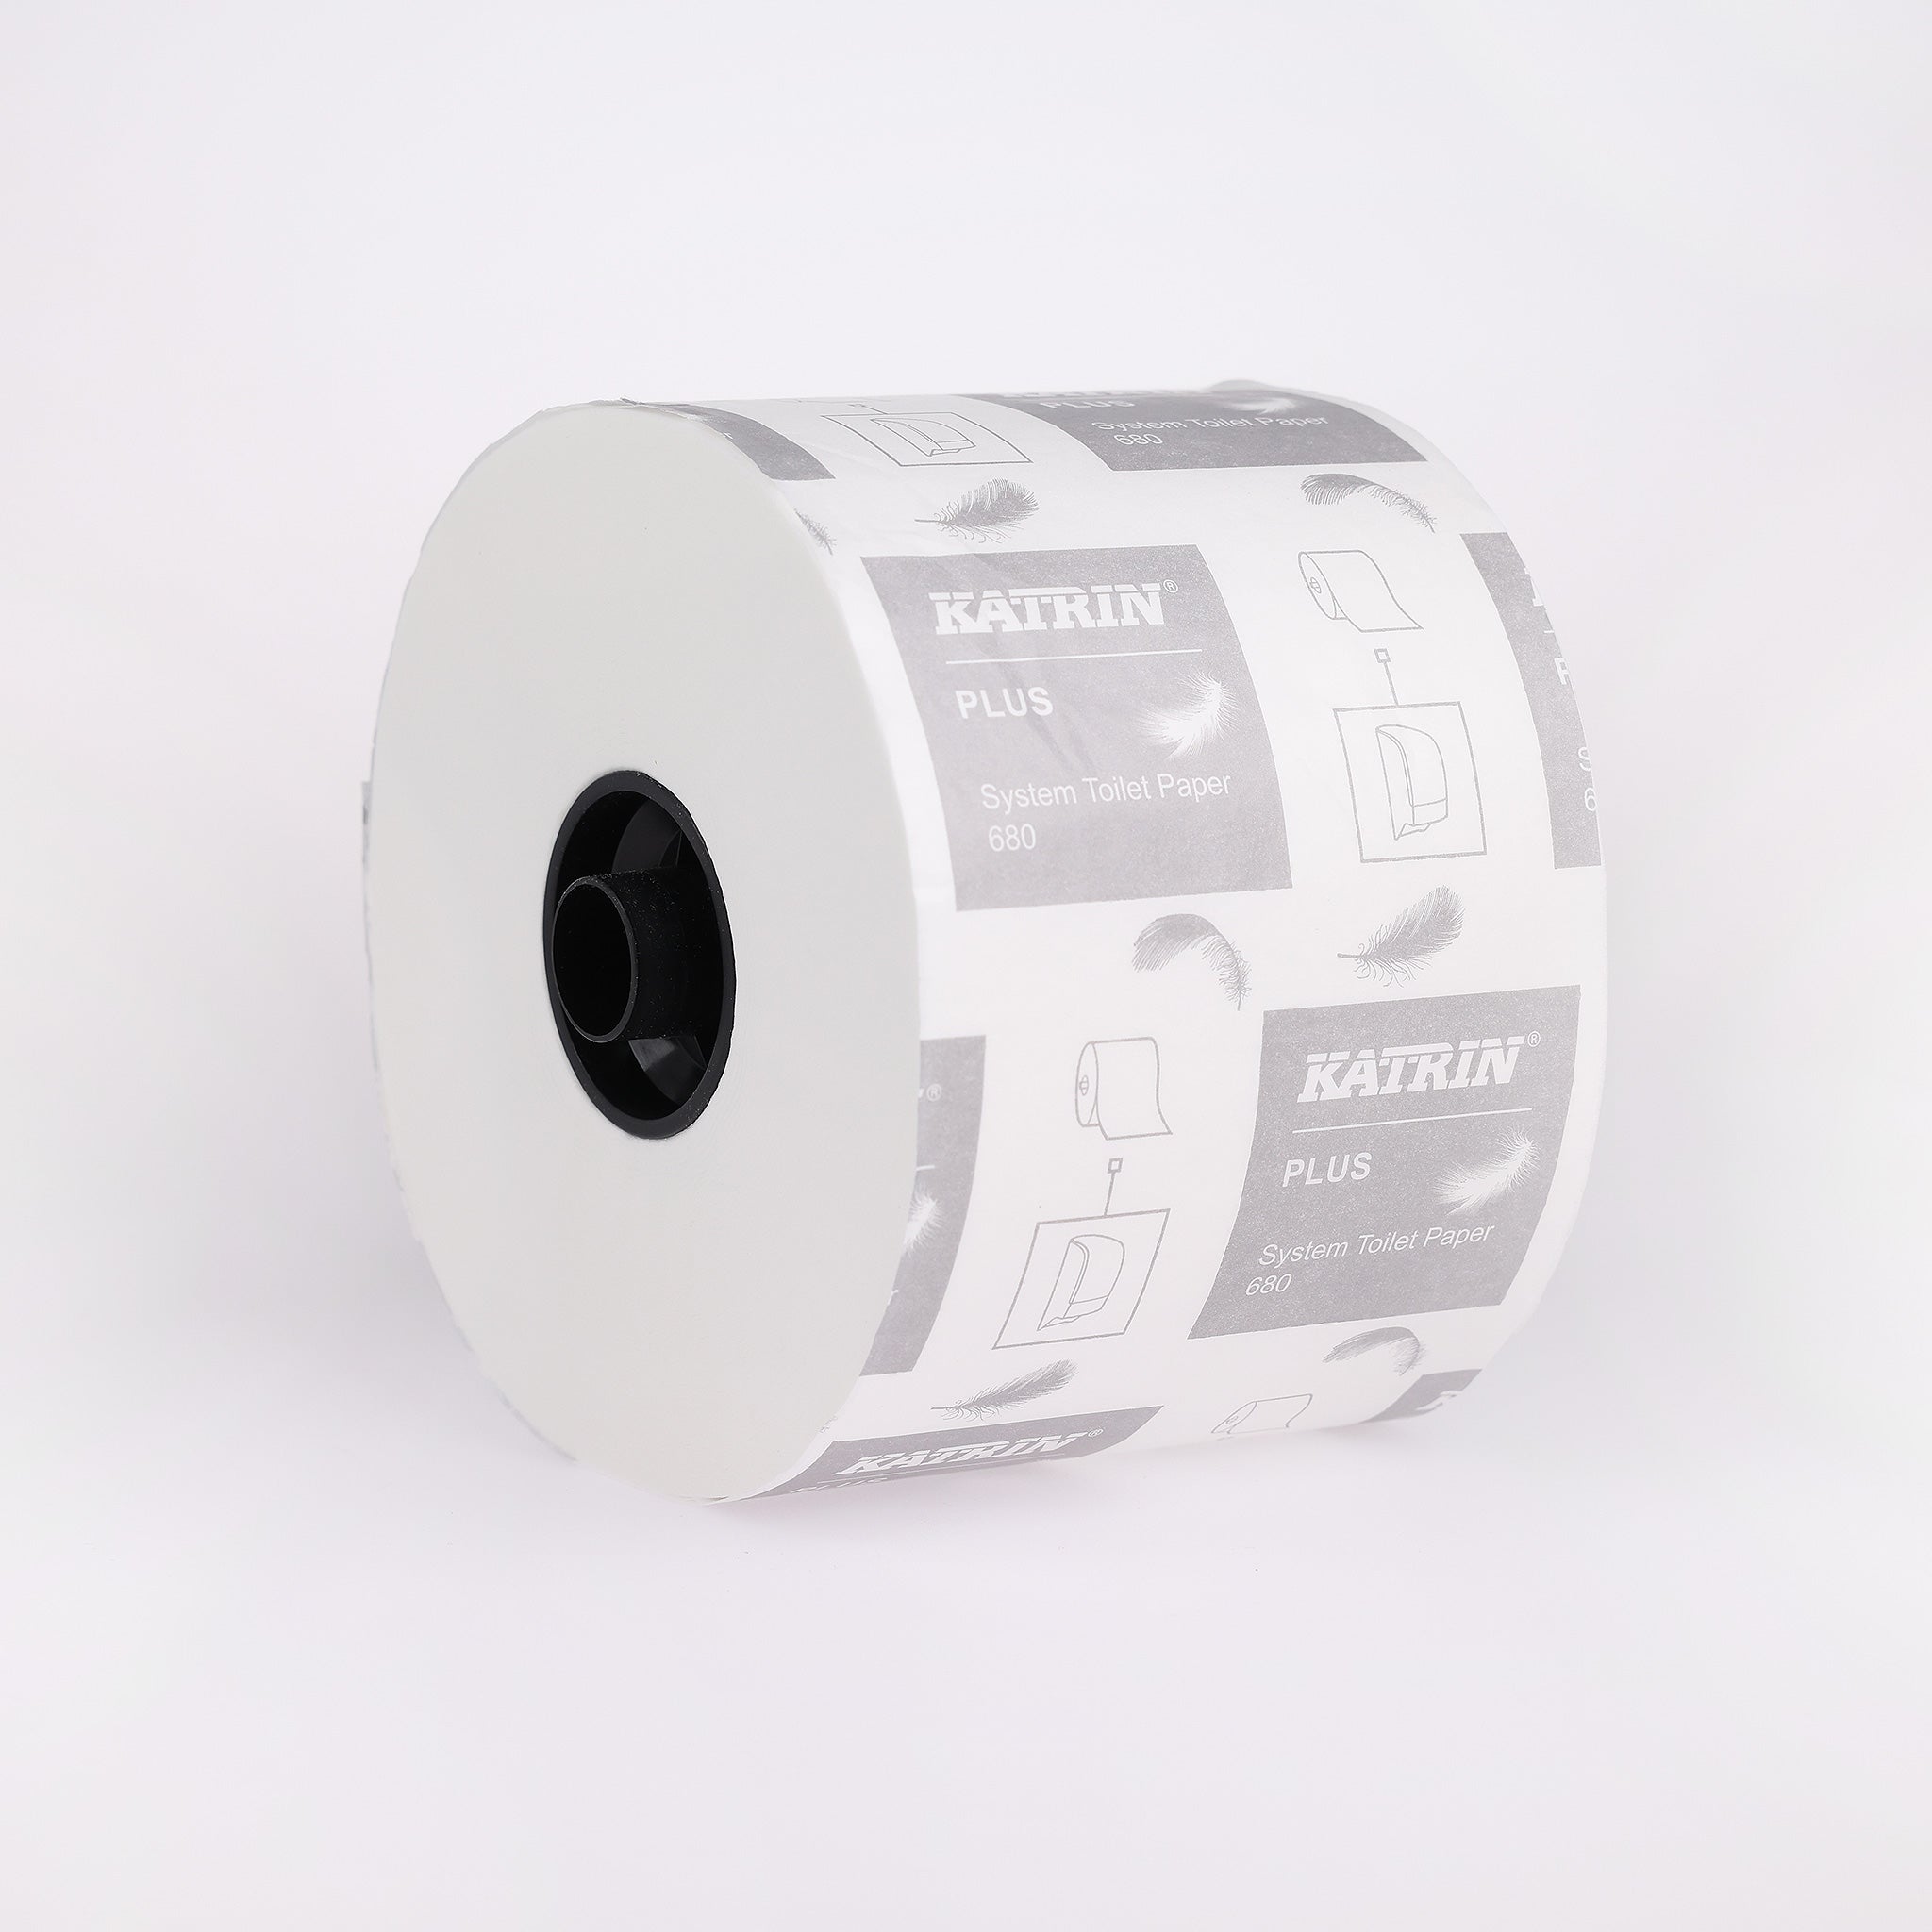 Toiletpapir Katrin Plus i 2 lag hos Cares.dk. Blød kvalitet og høj komfort, der sikrer en skånsom aftørring. Svanemærket!